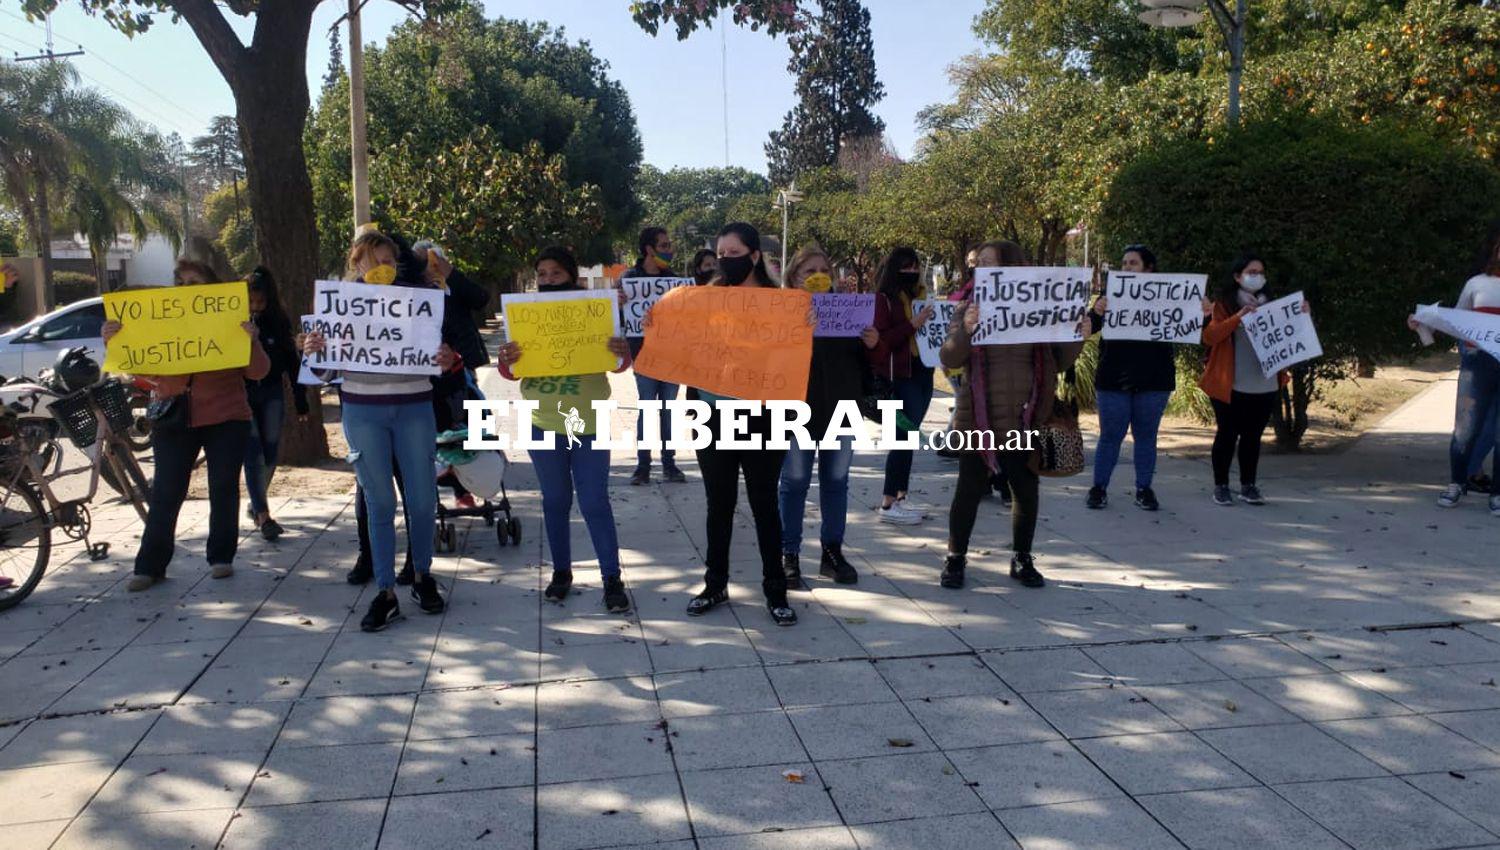 Friacuteas volvioacute a marchar para pedir Justicia por los abusos sexuales en contra de tres adolescentes